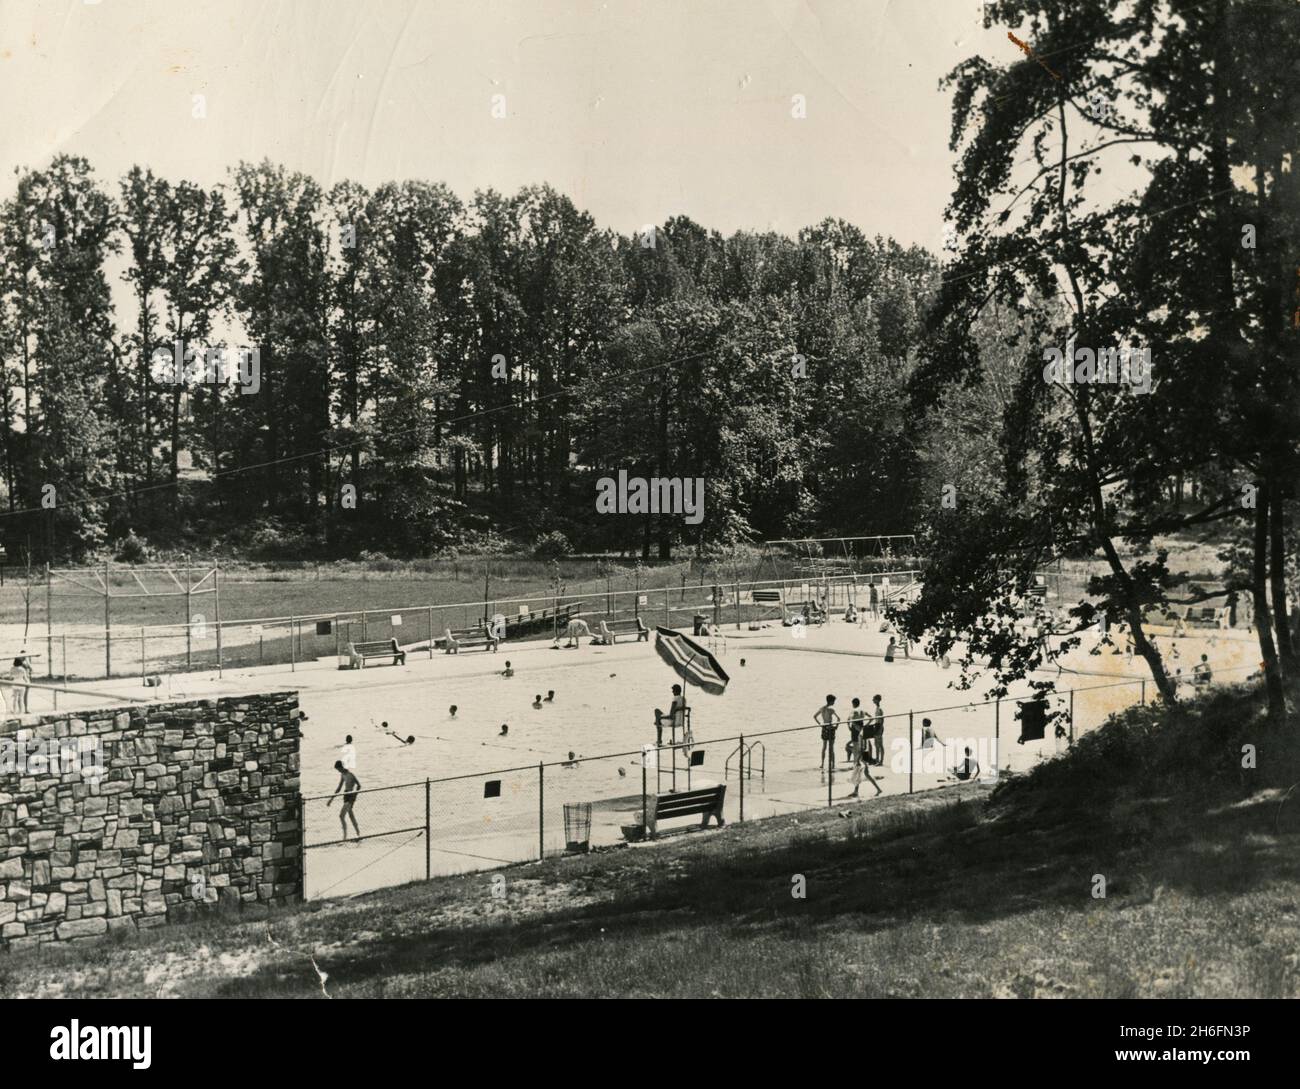 Una delle cinque piscine olimpioniche di Levittown, un luogo progettato dal censimento e una comunità pianificata, Bucks County, Penn, USA 1954 Foto Stock